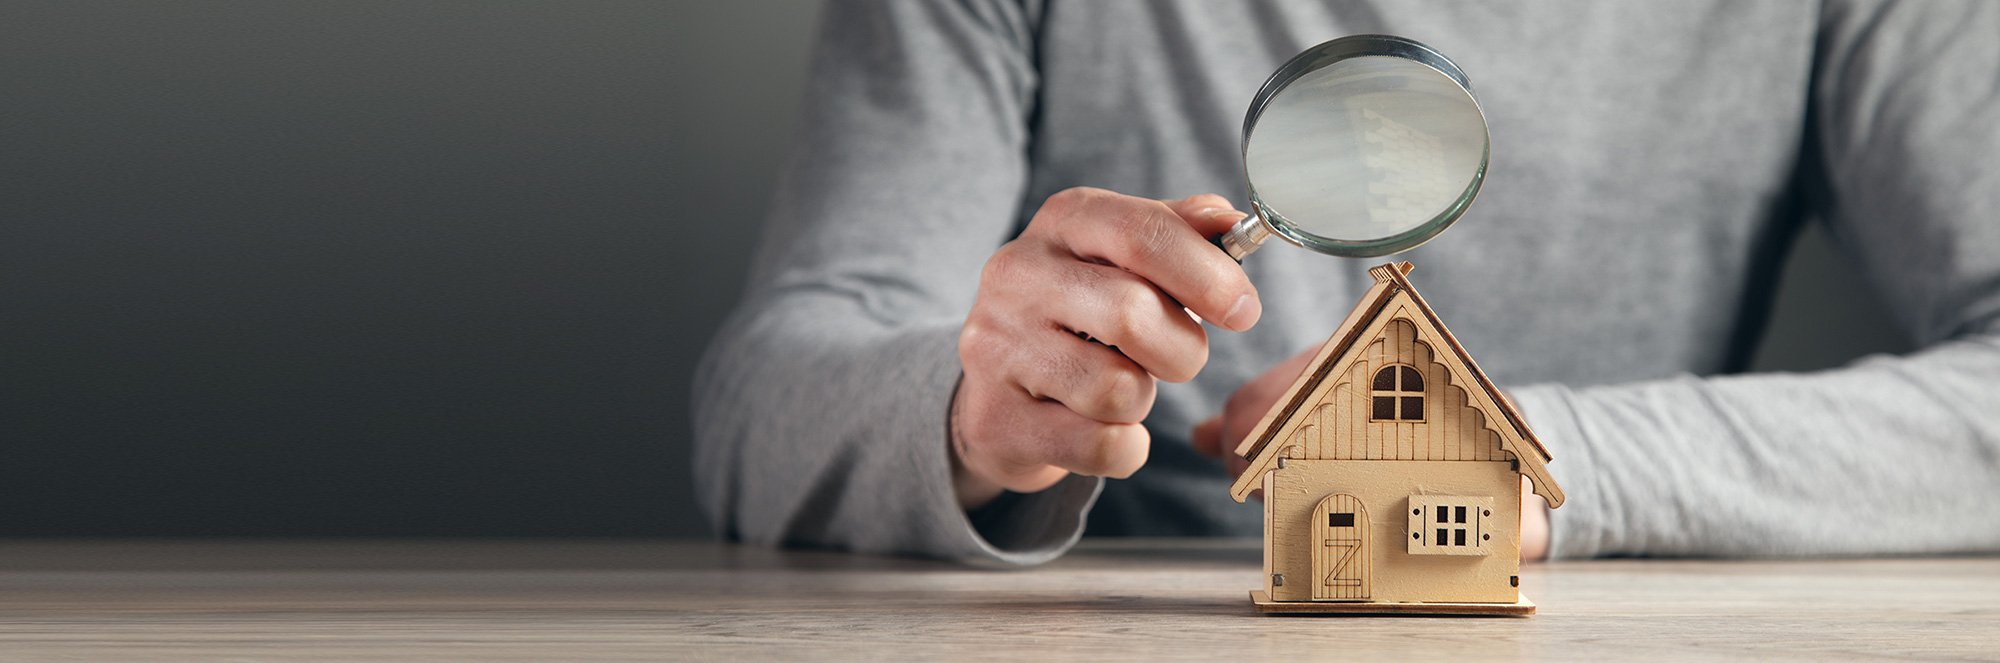 Liste de contrôle pour un premier achat de maison : Ce qu’il faut vérifier lors de l’achat d’un logement.